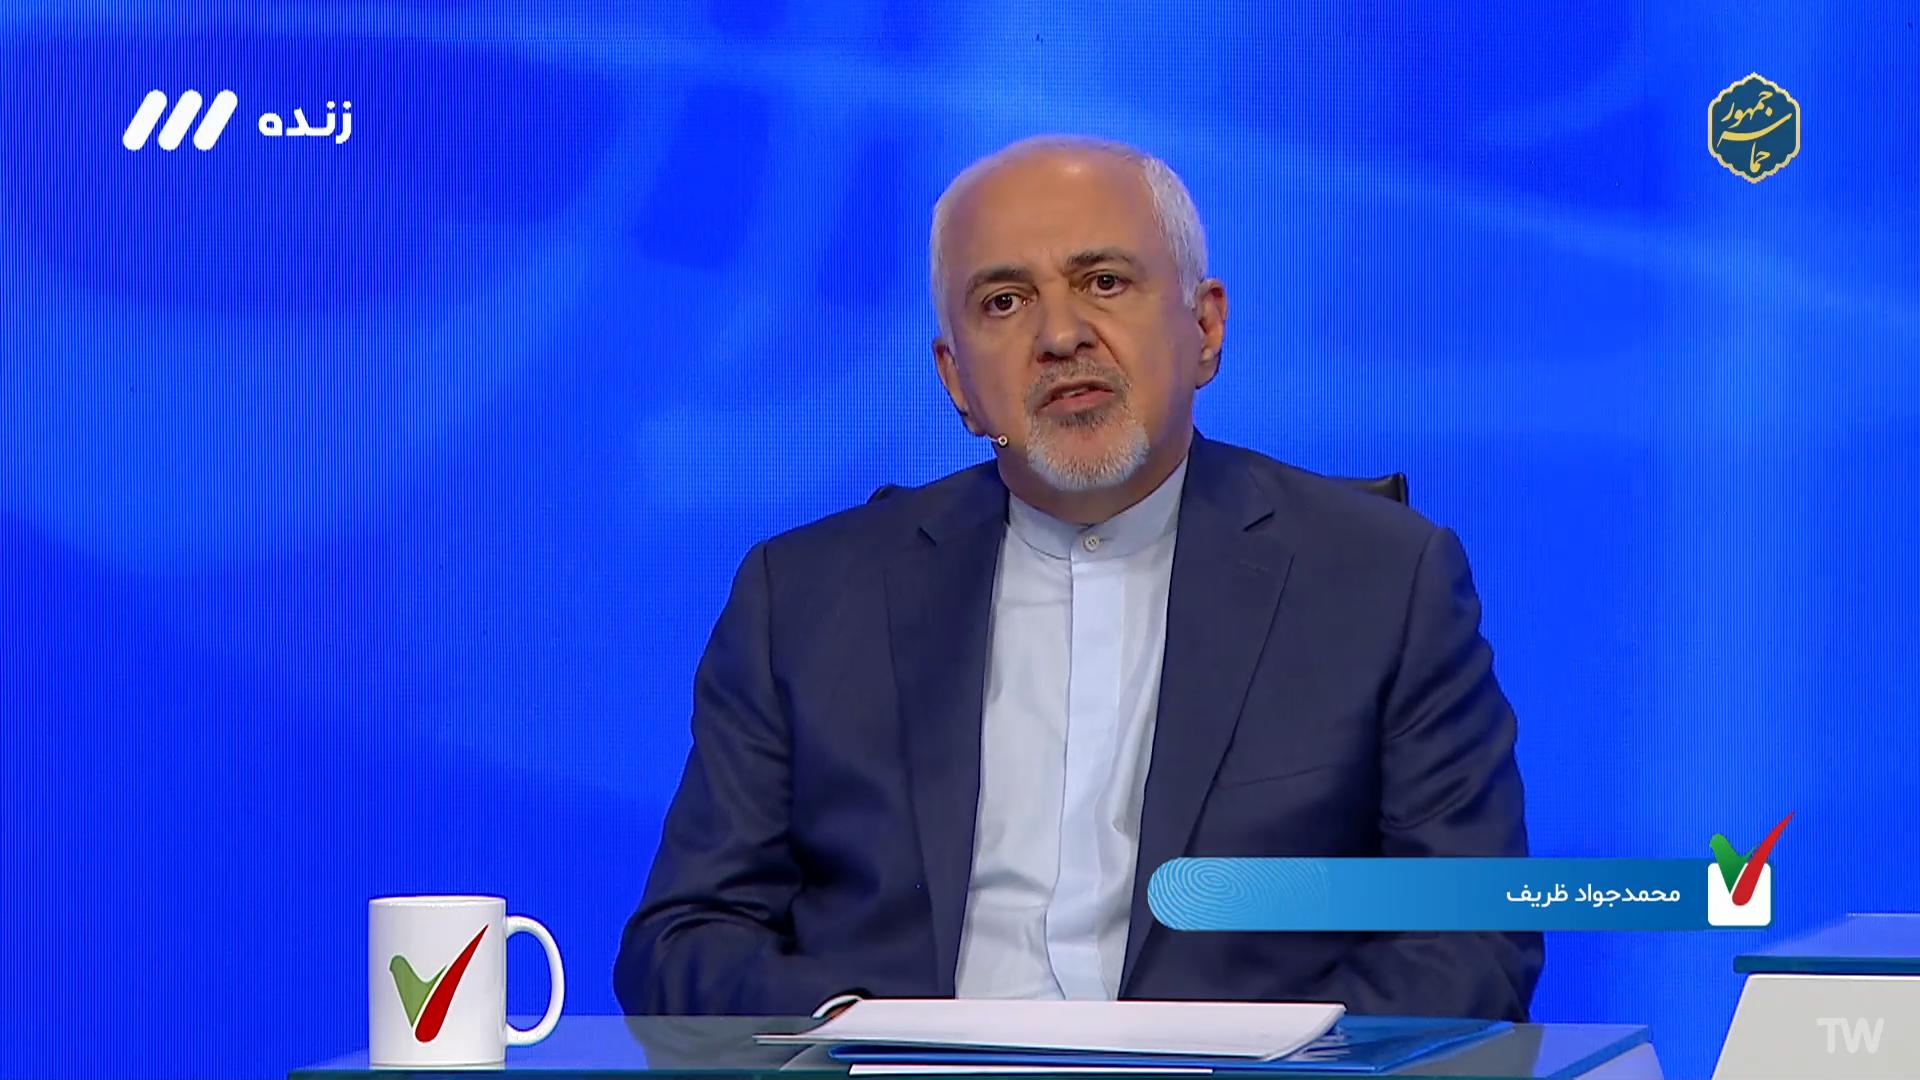 ظریف در تلویزیون: در سیاست خارجی مهم است که چه کسی رییس جمهور است